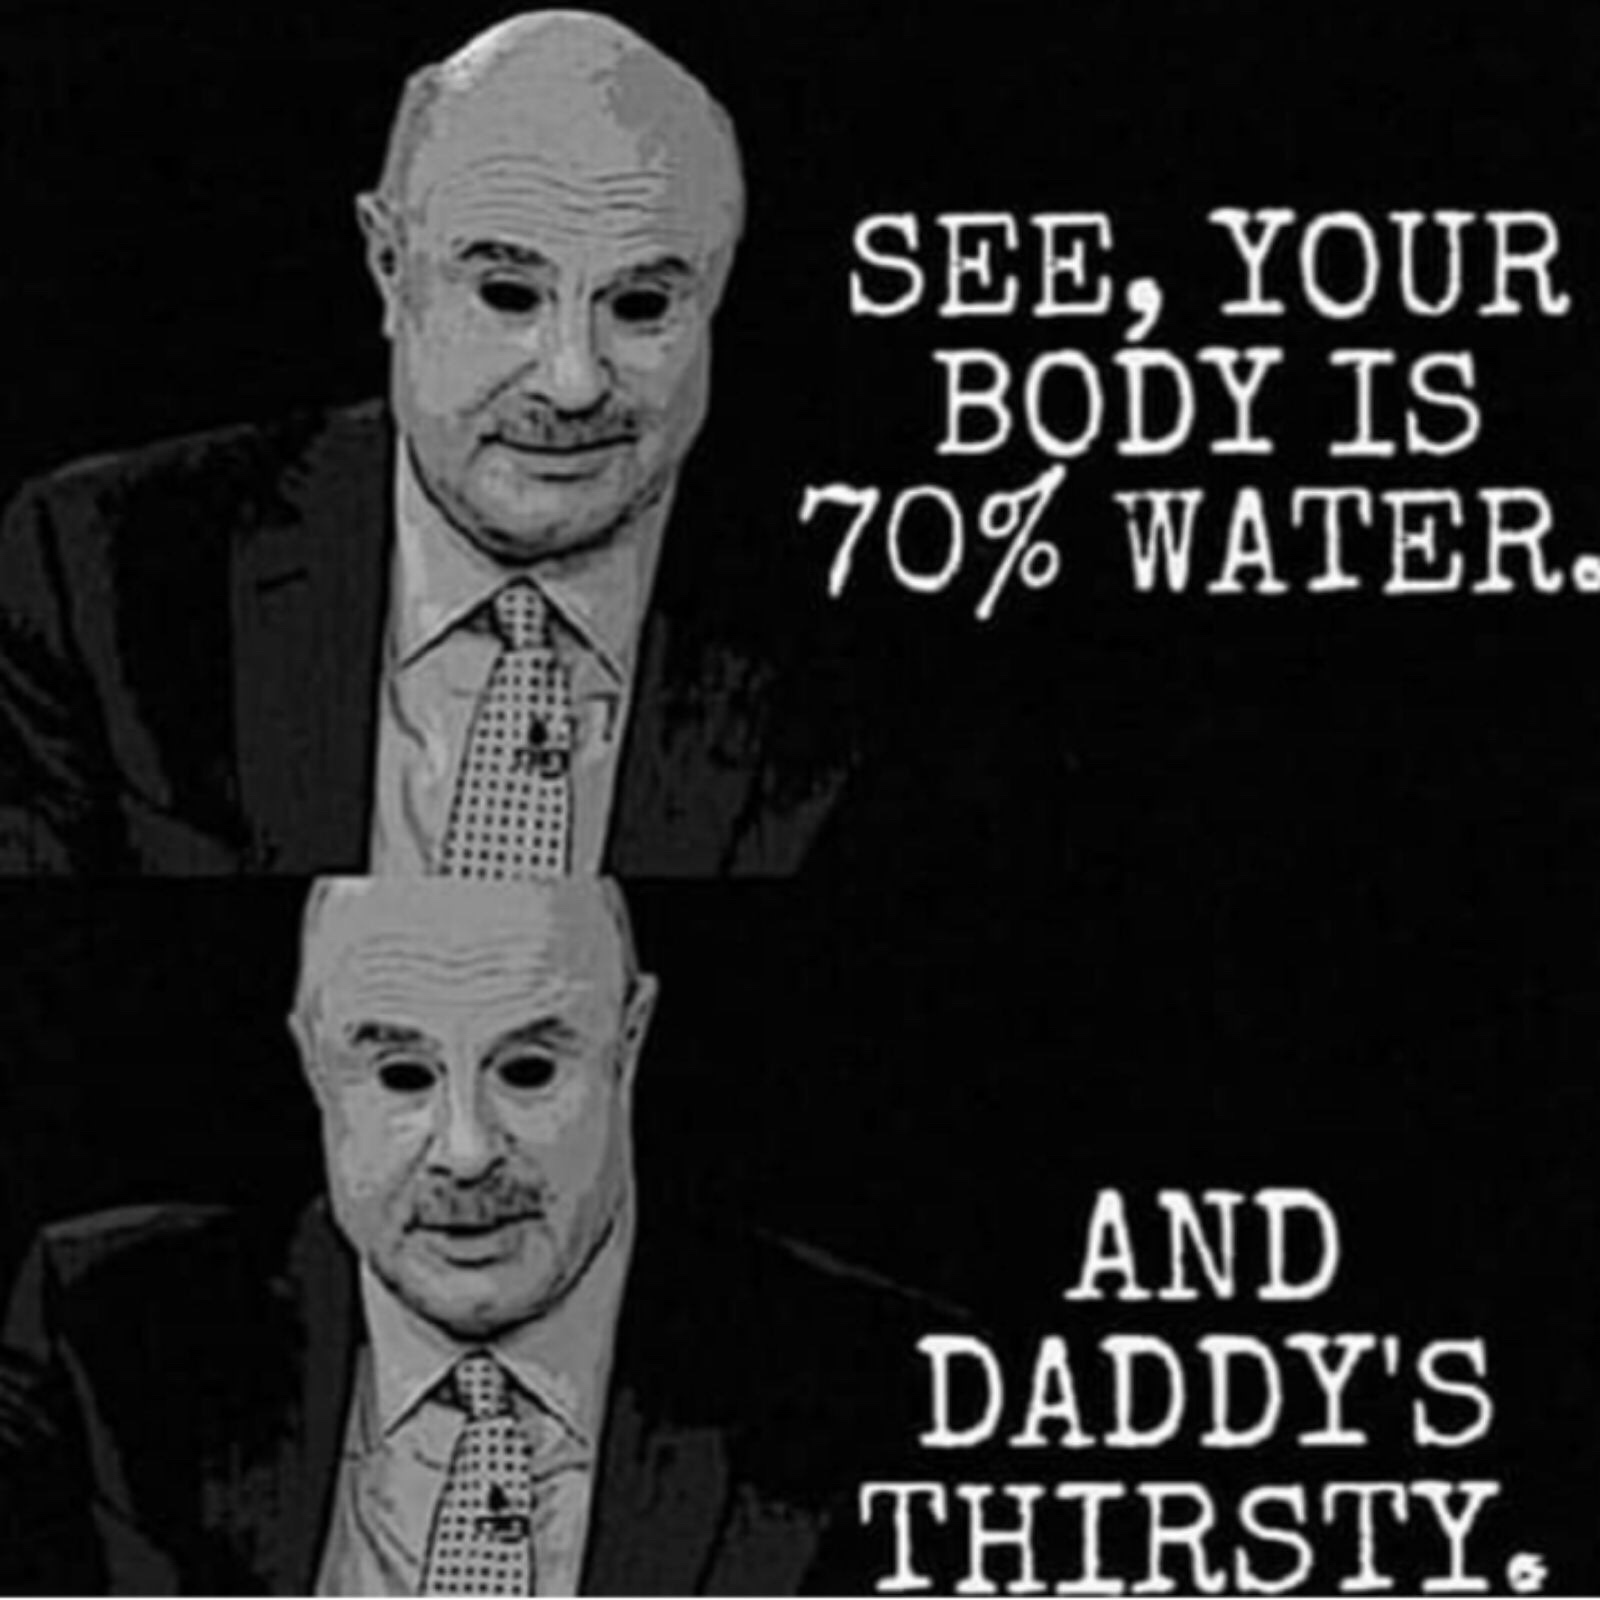 thirst thirst thirst - meme